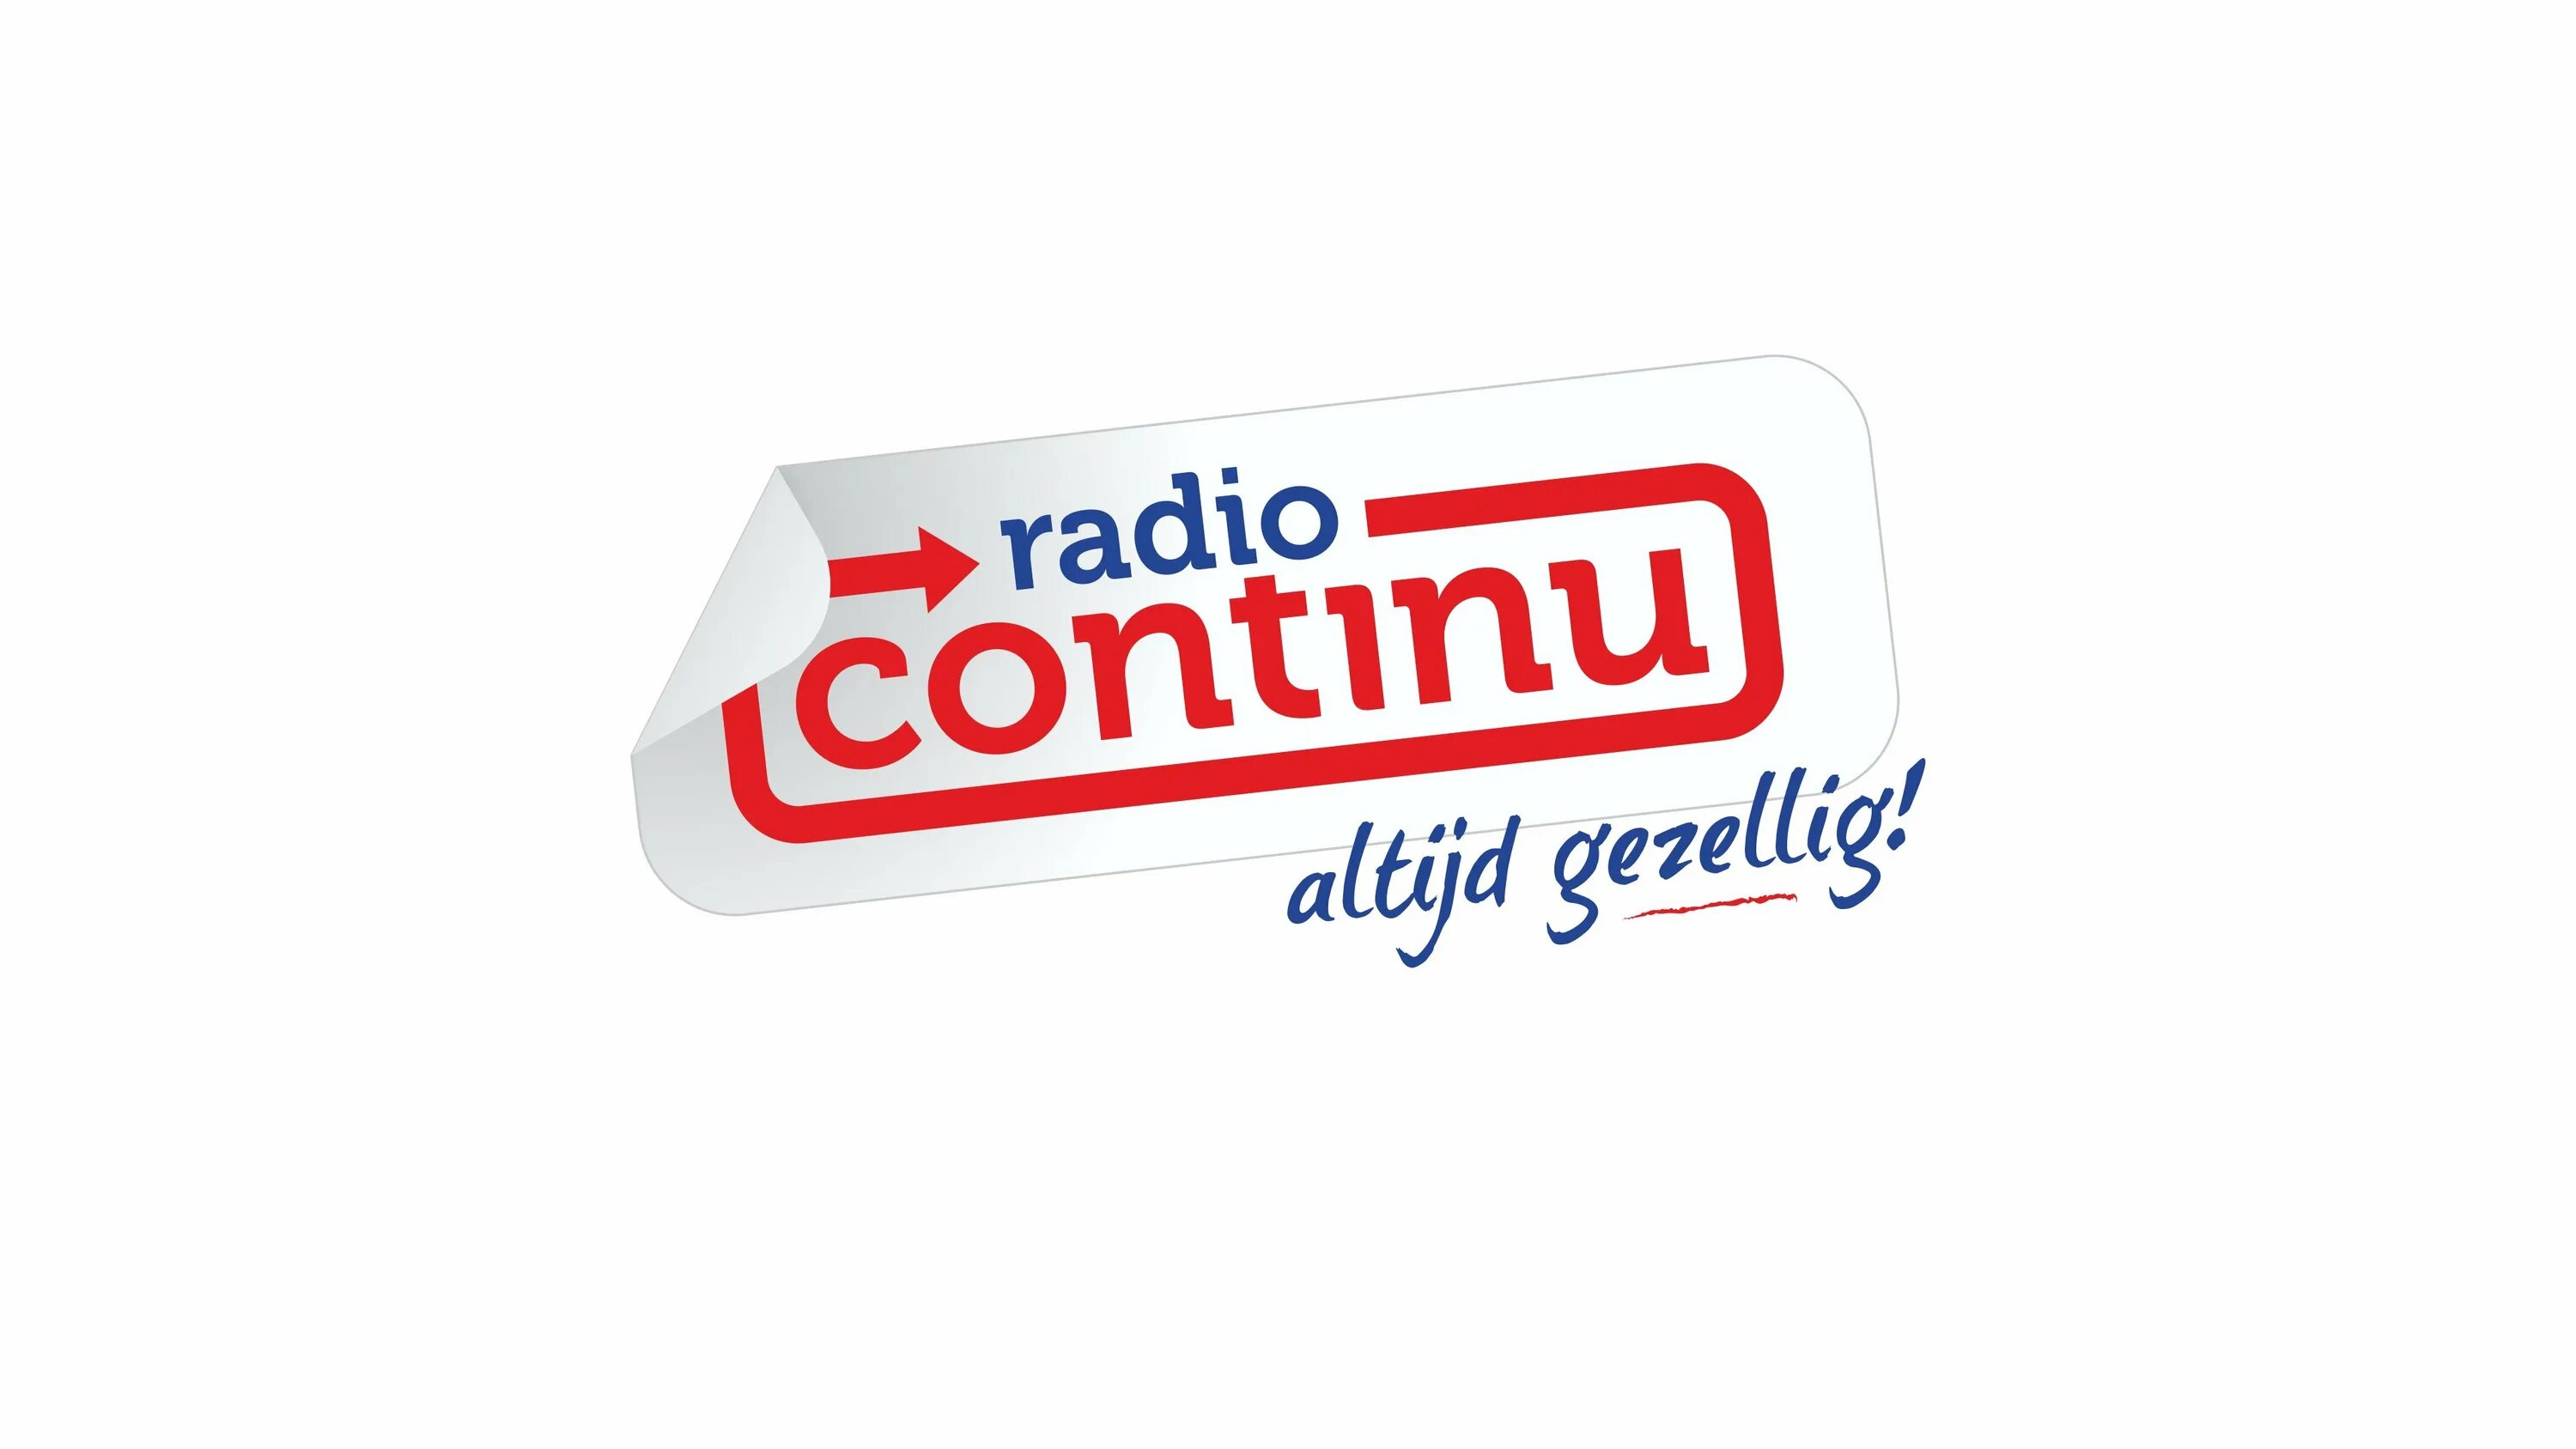 Радио. Радио русская волна. Radio Hobby лого. Xiboman радио.